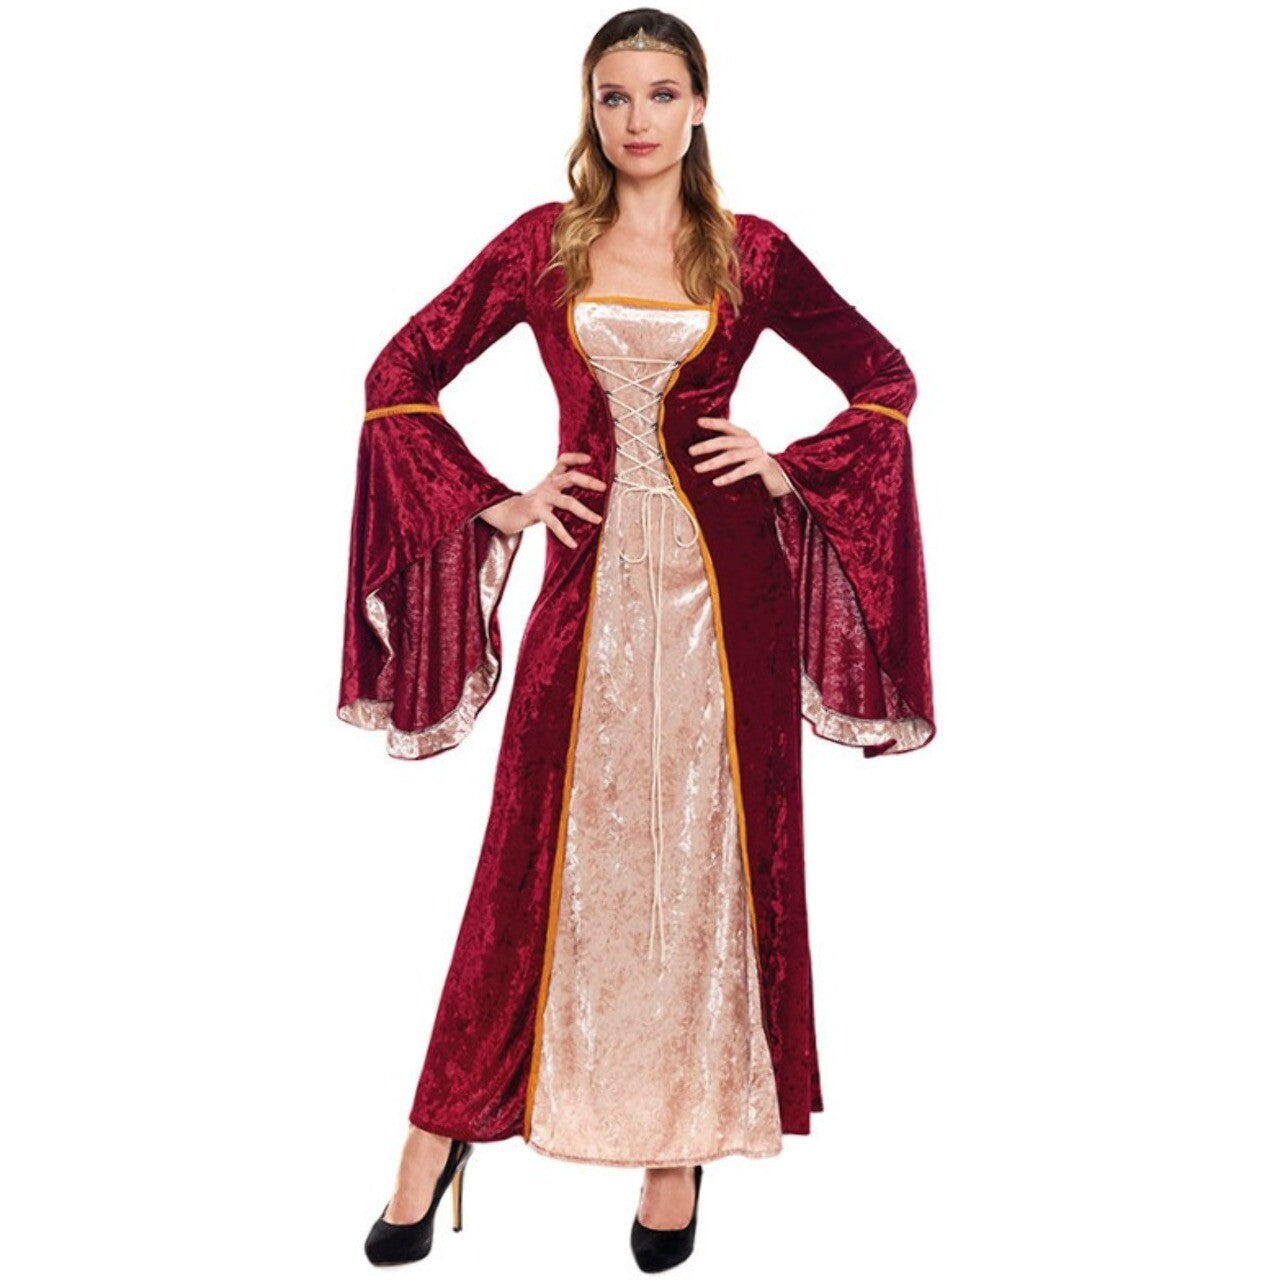 Disfraz Medieval Clarisa para mujer - Disfraces No solo fiesta